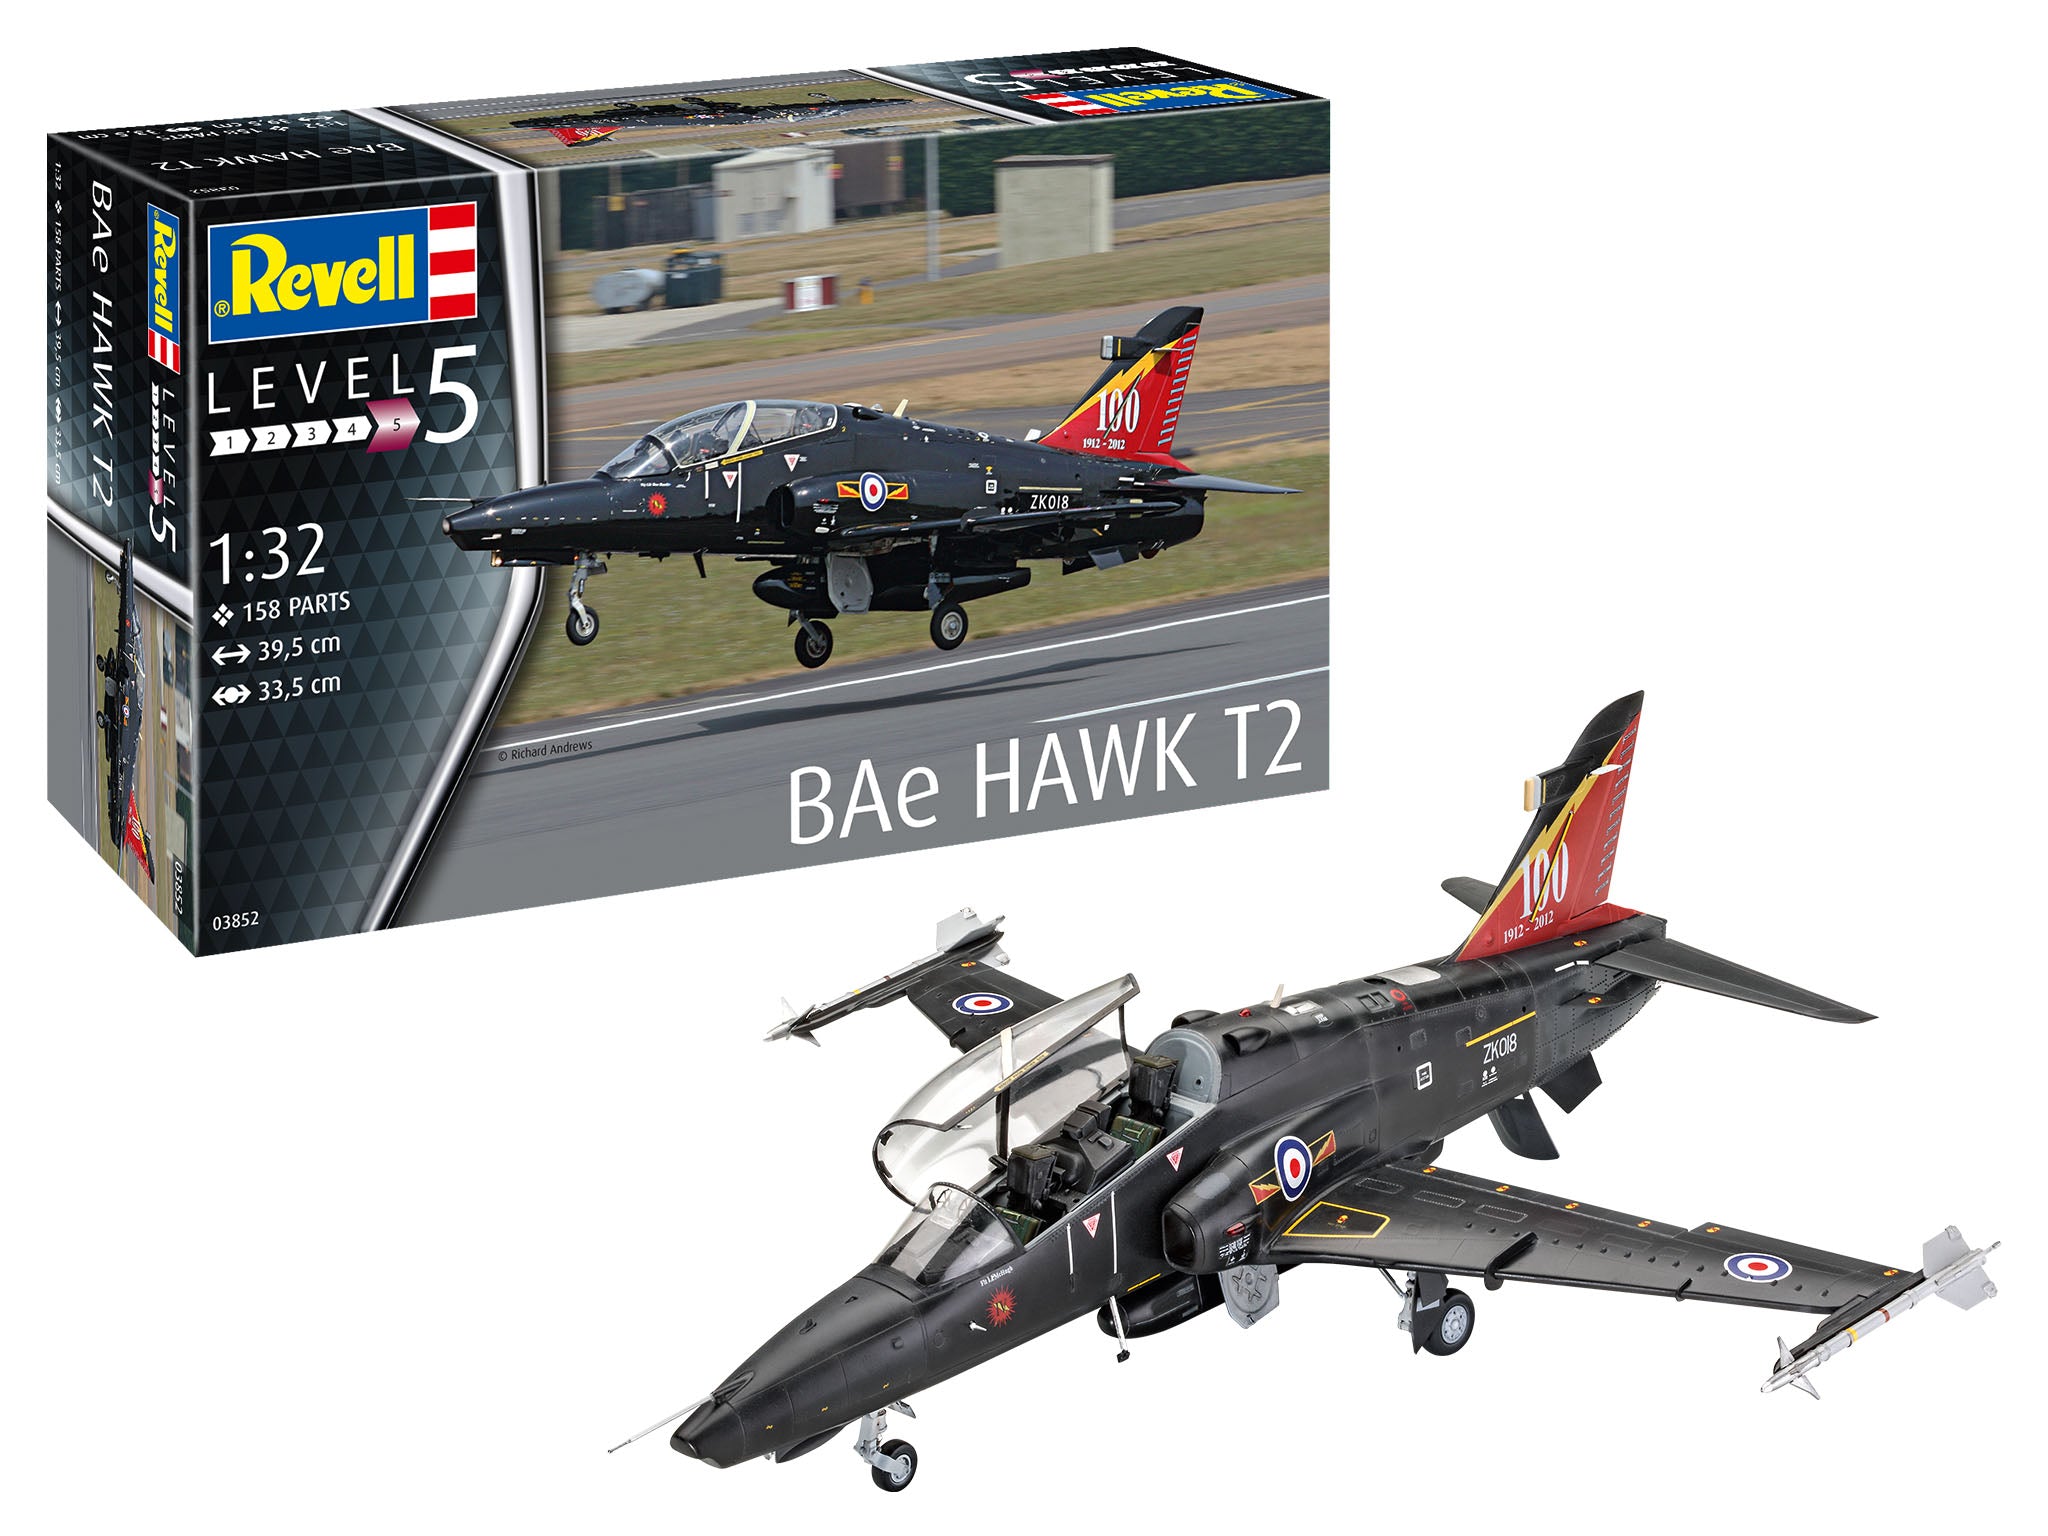 Revell BAe Hawk T2 1:32 Plane Model Building Kit